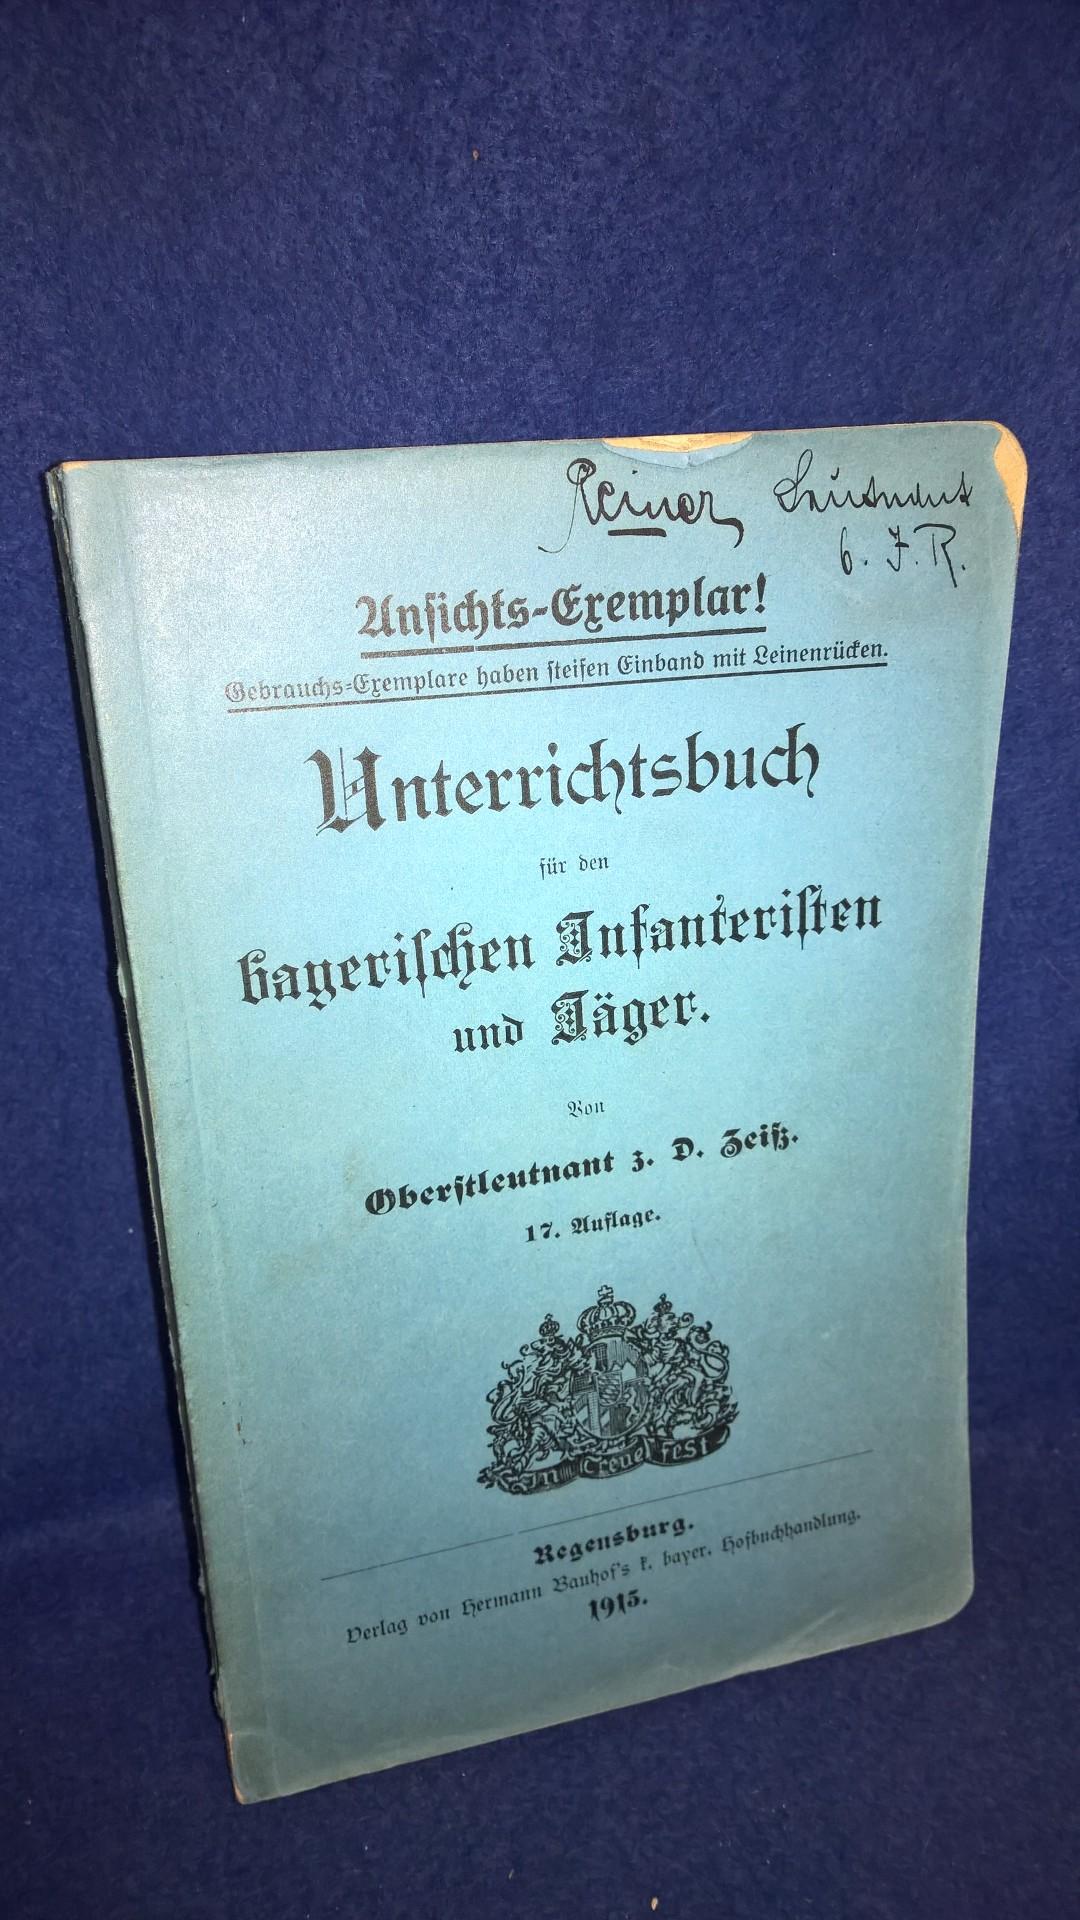  Unterrichtsbuch für den bayerischen Infanteristen und Jäger. 